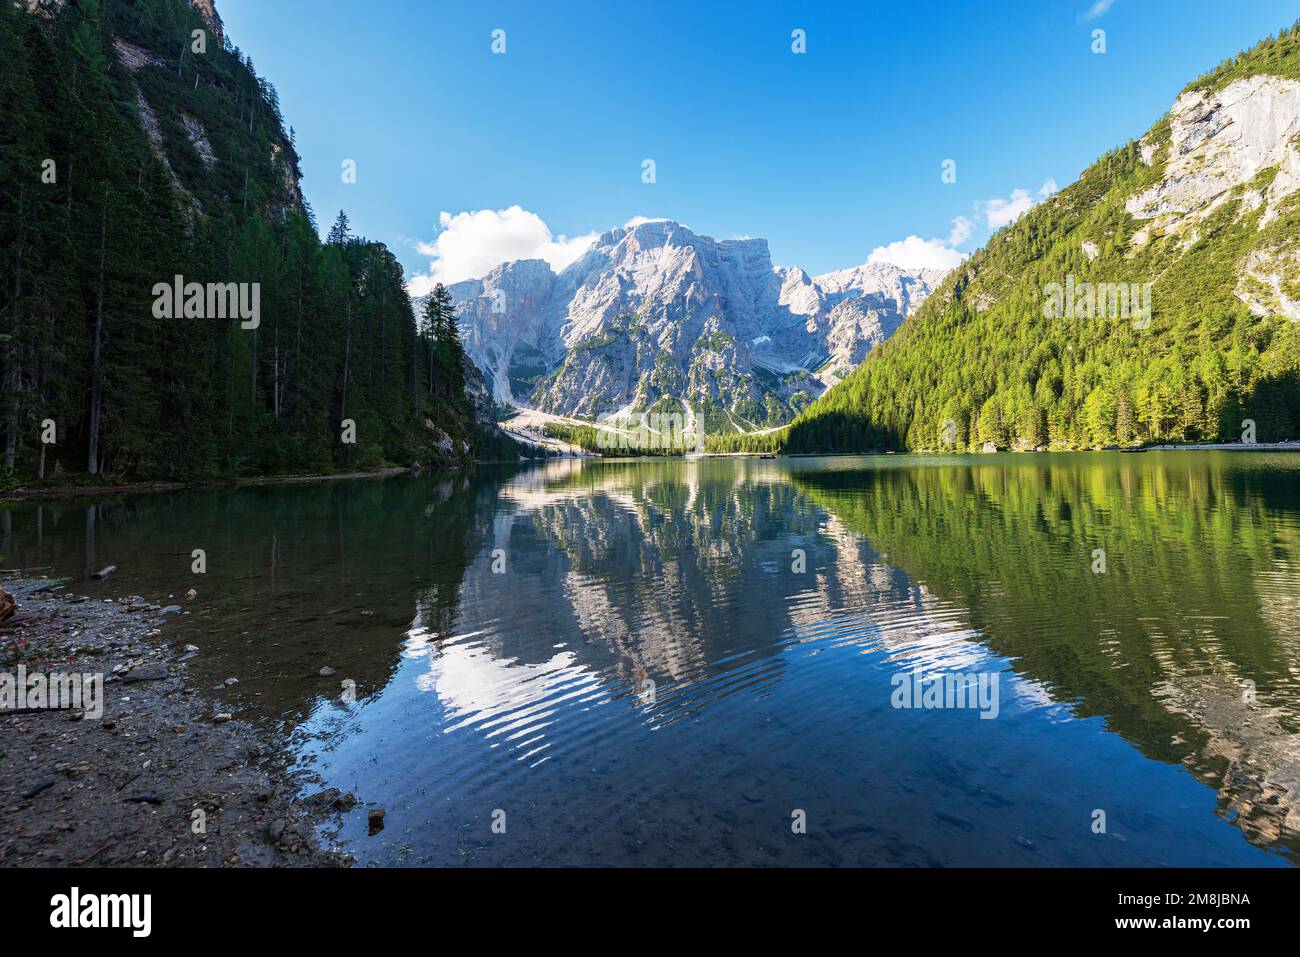 Le lac Braies (Lago di Braies ou Pragser Wildsee) et le pic de la montagne de Croda del Becco ou Seekofel, Dolomites, Trentin-Haut-Adige, Bolzano, Italie. Banque D'Images